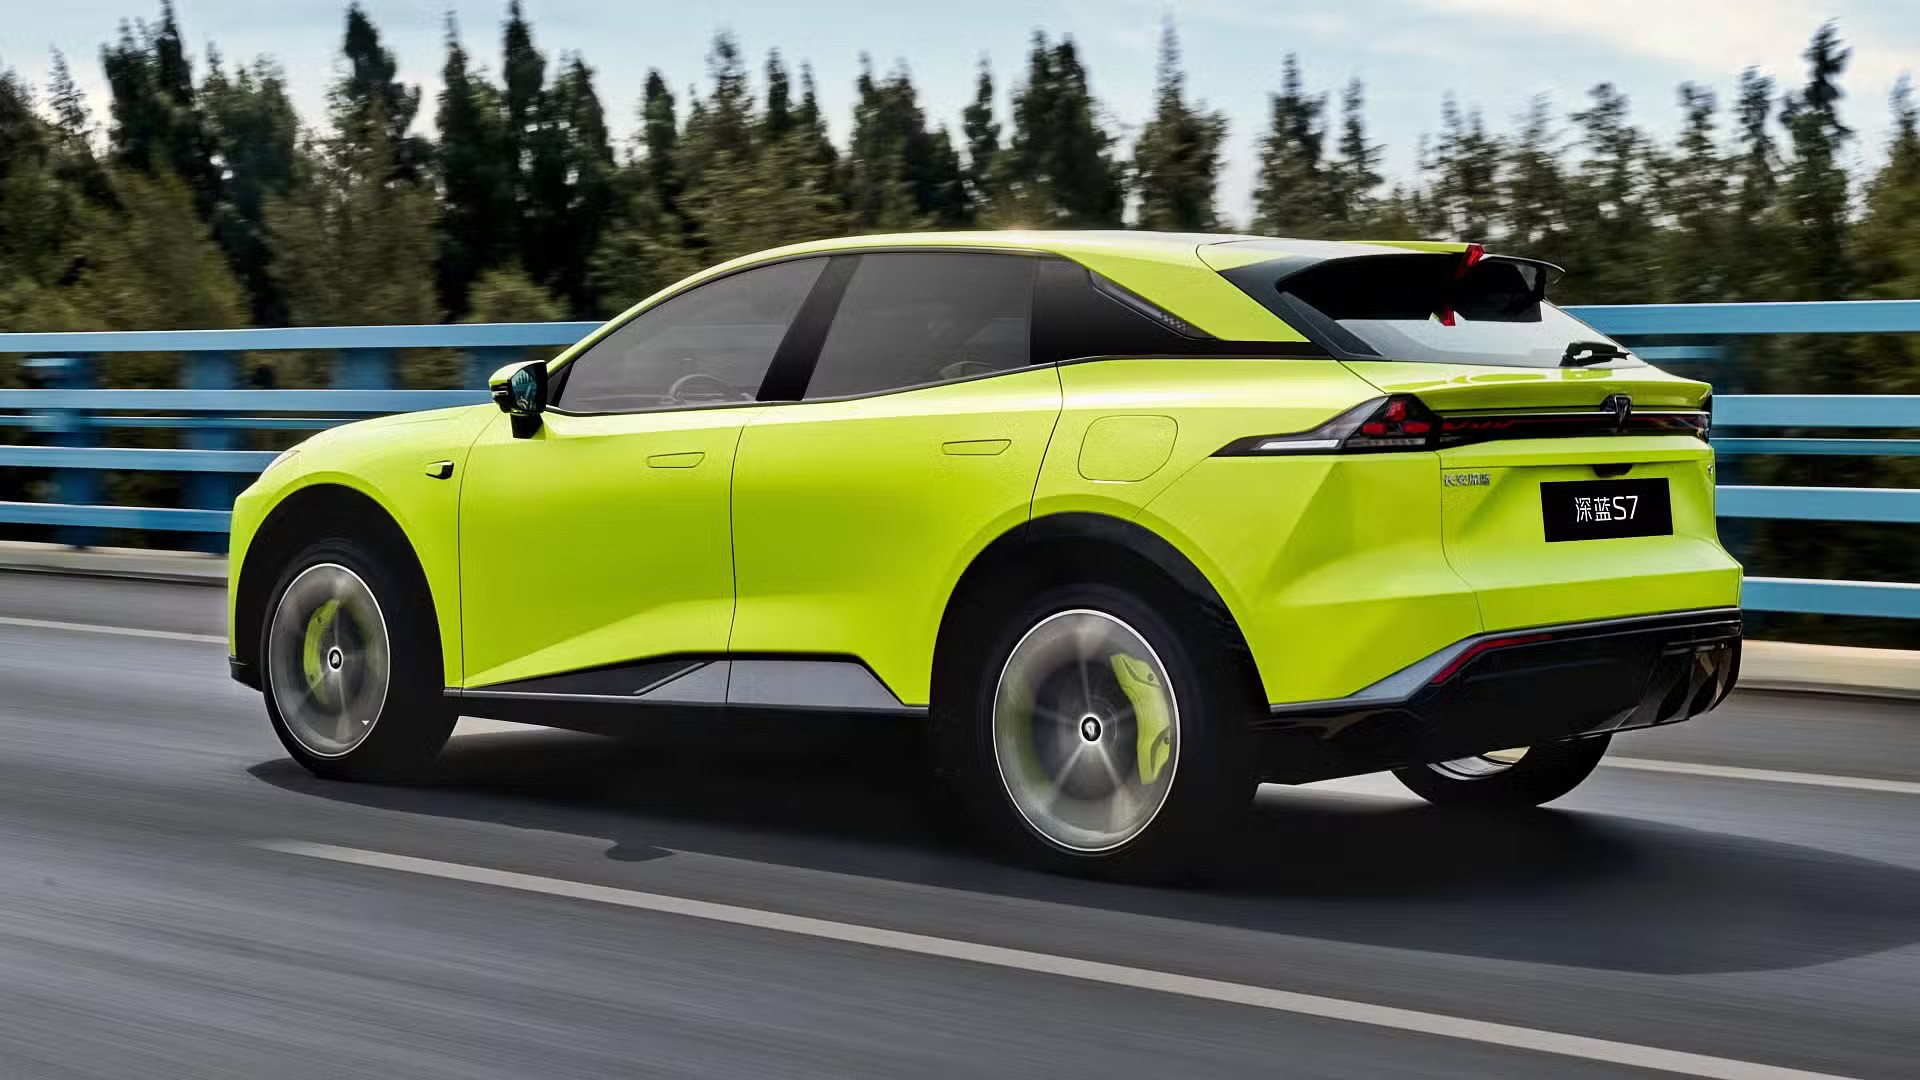 Ra mắt Mazda Arata Concept - SUV thuần điện ngang cỡ Mazda CX-5, chạy hơn 600km/sạc- Ảnh 6.